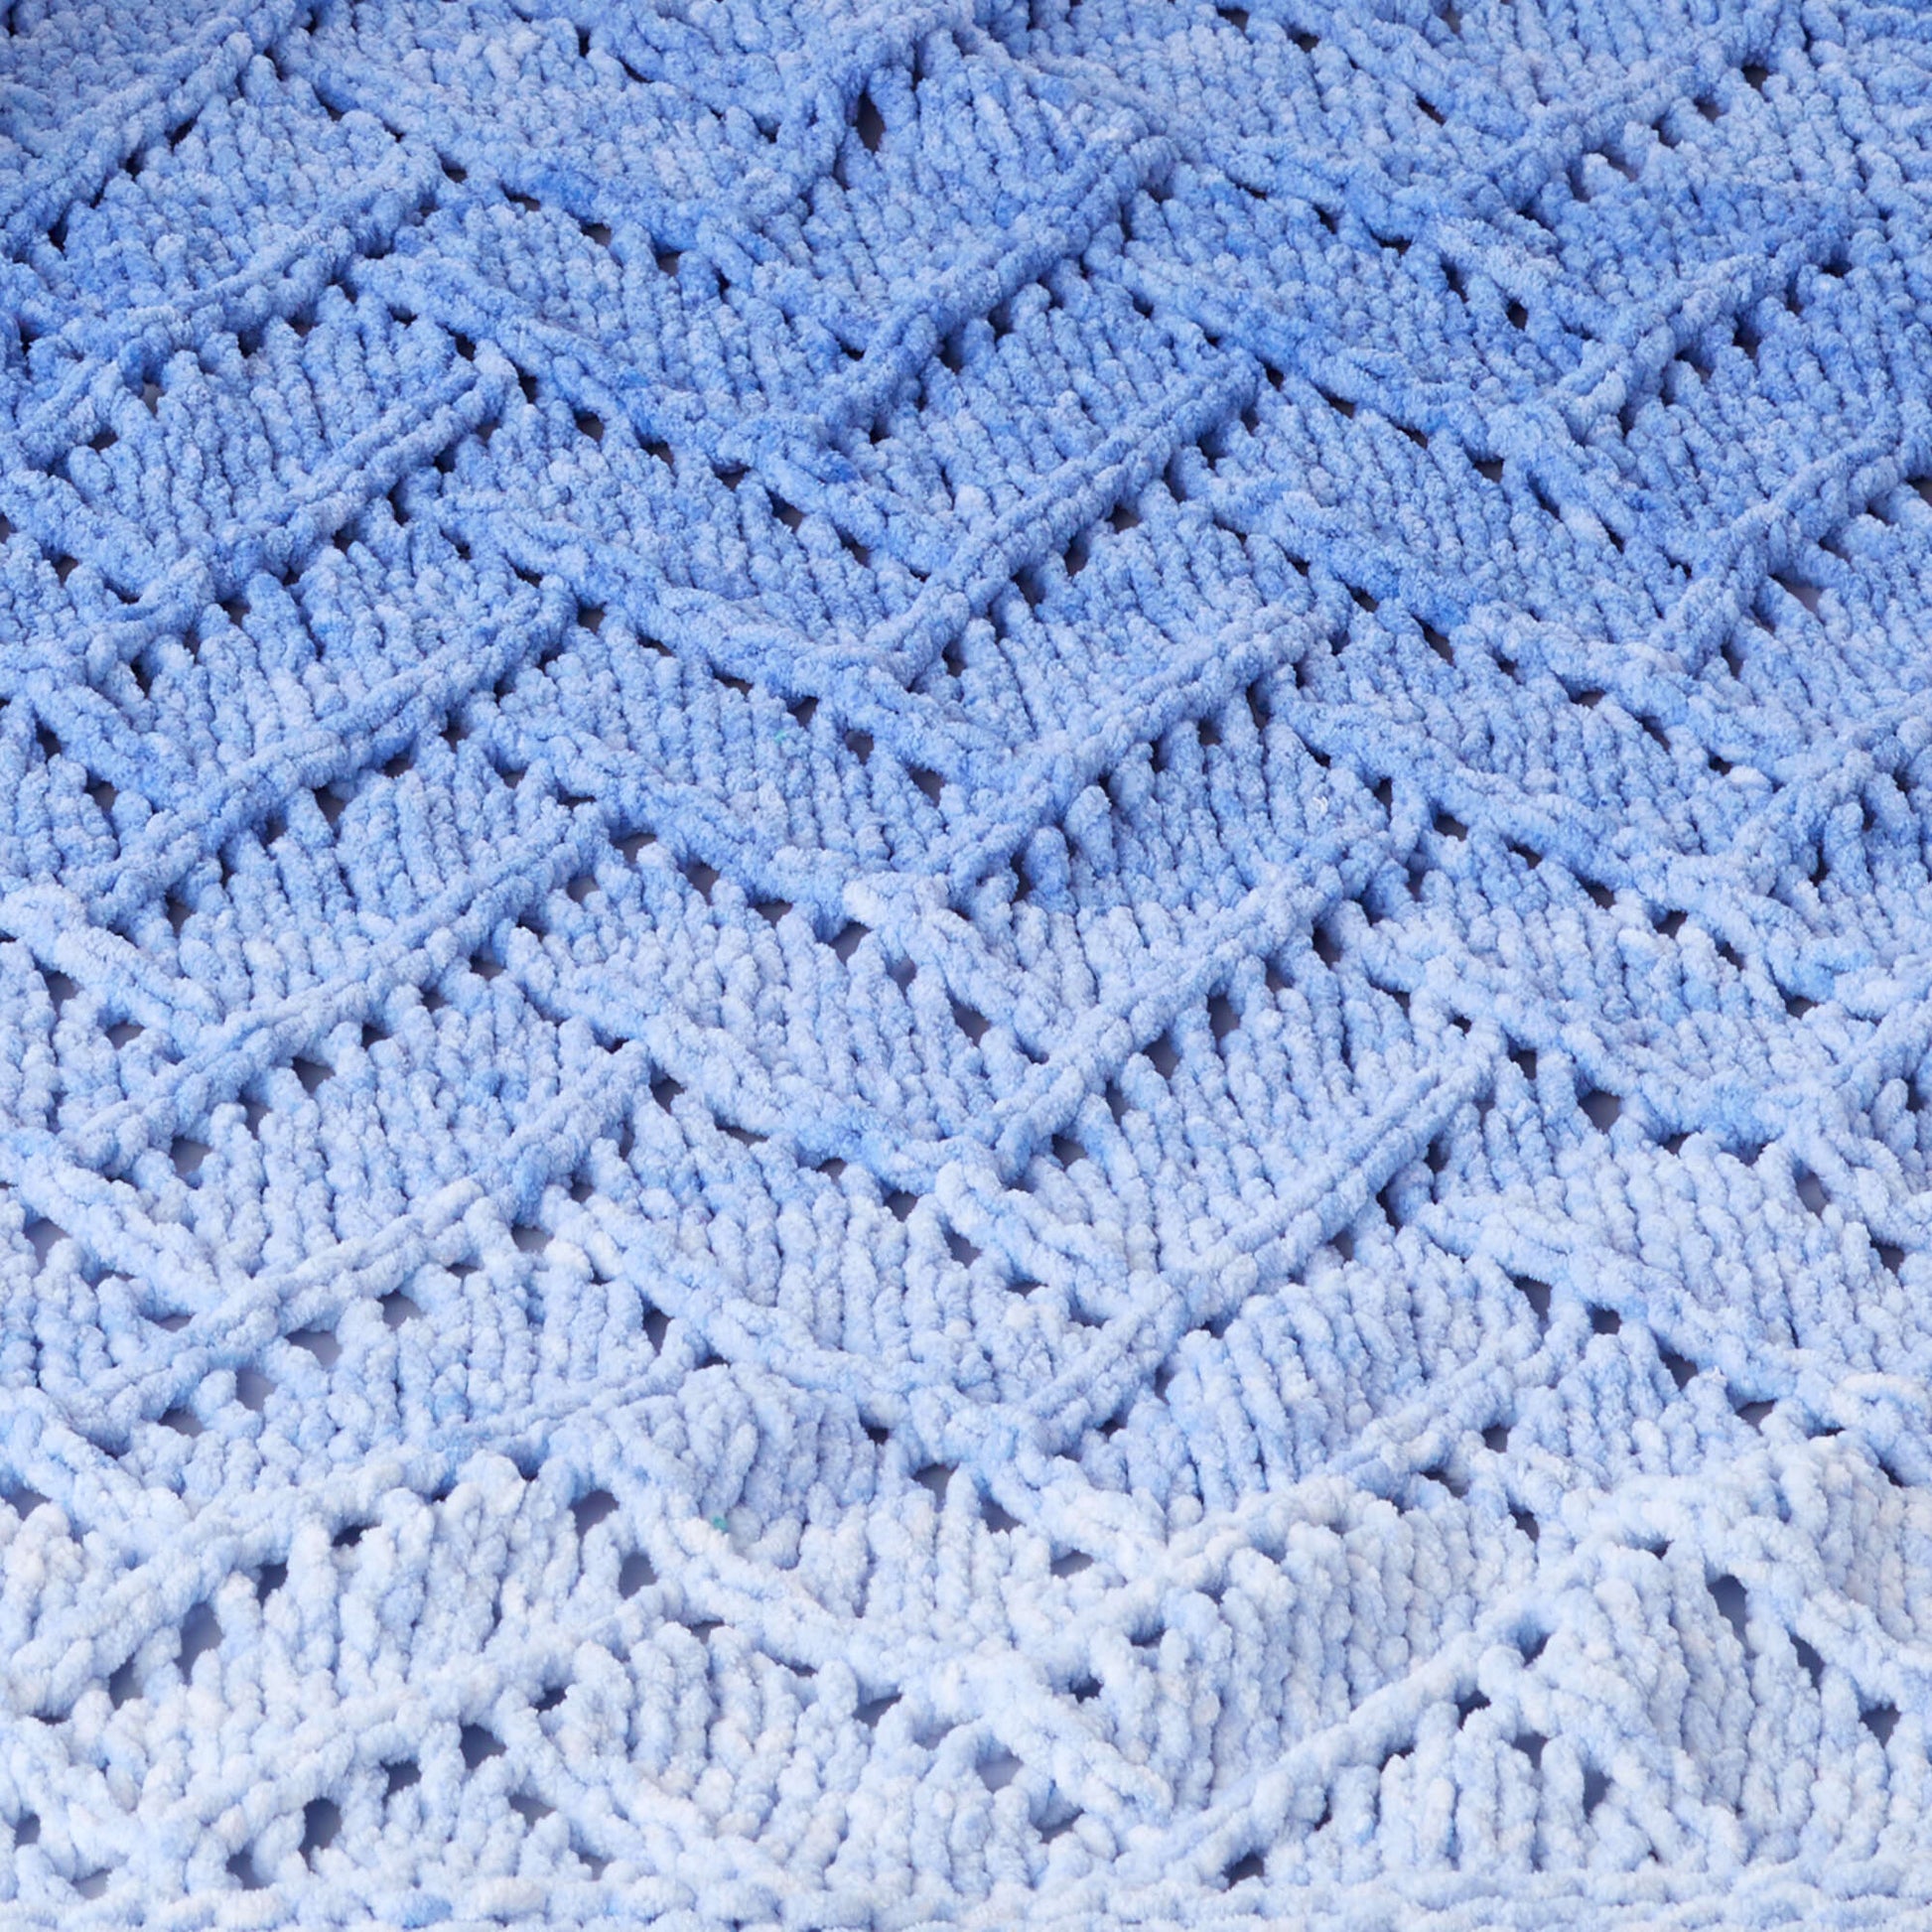 Free Bernat Garden Wall Knit Blanket Pattern